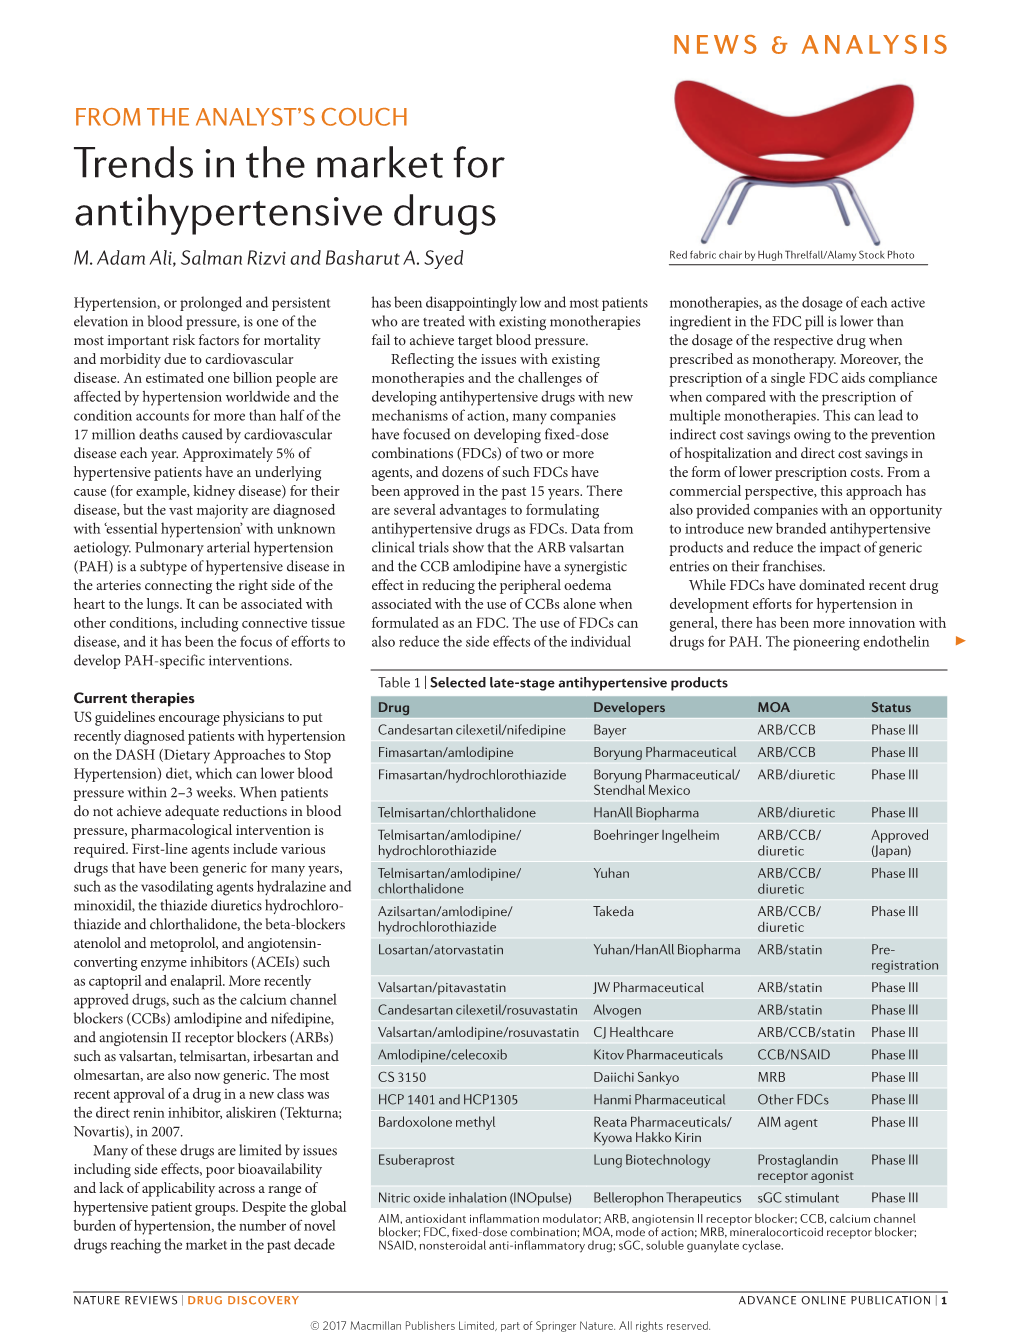 Trends in the Market for Antihypertensive Drugs M